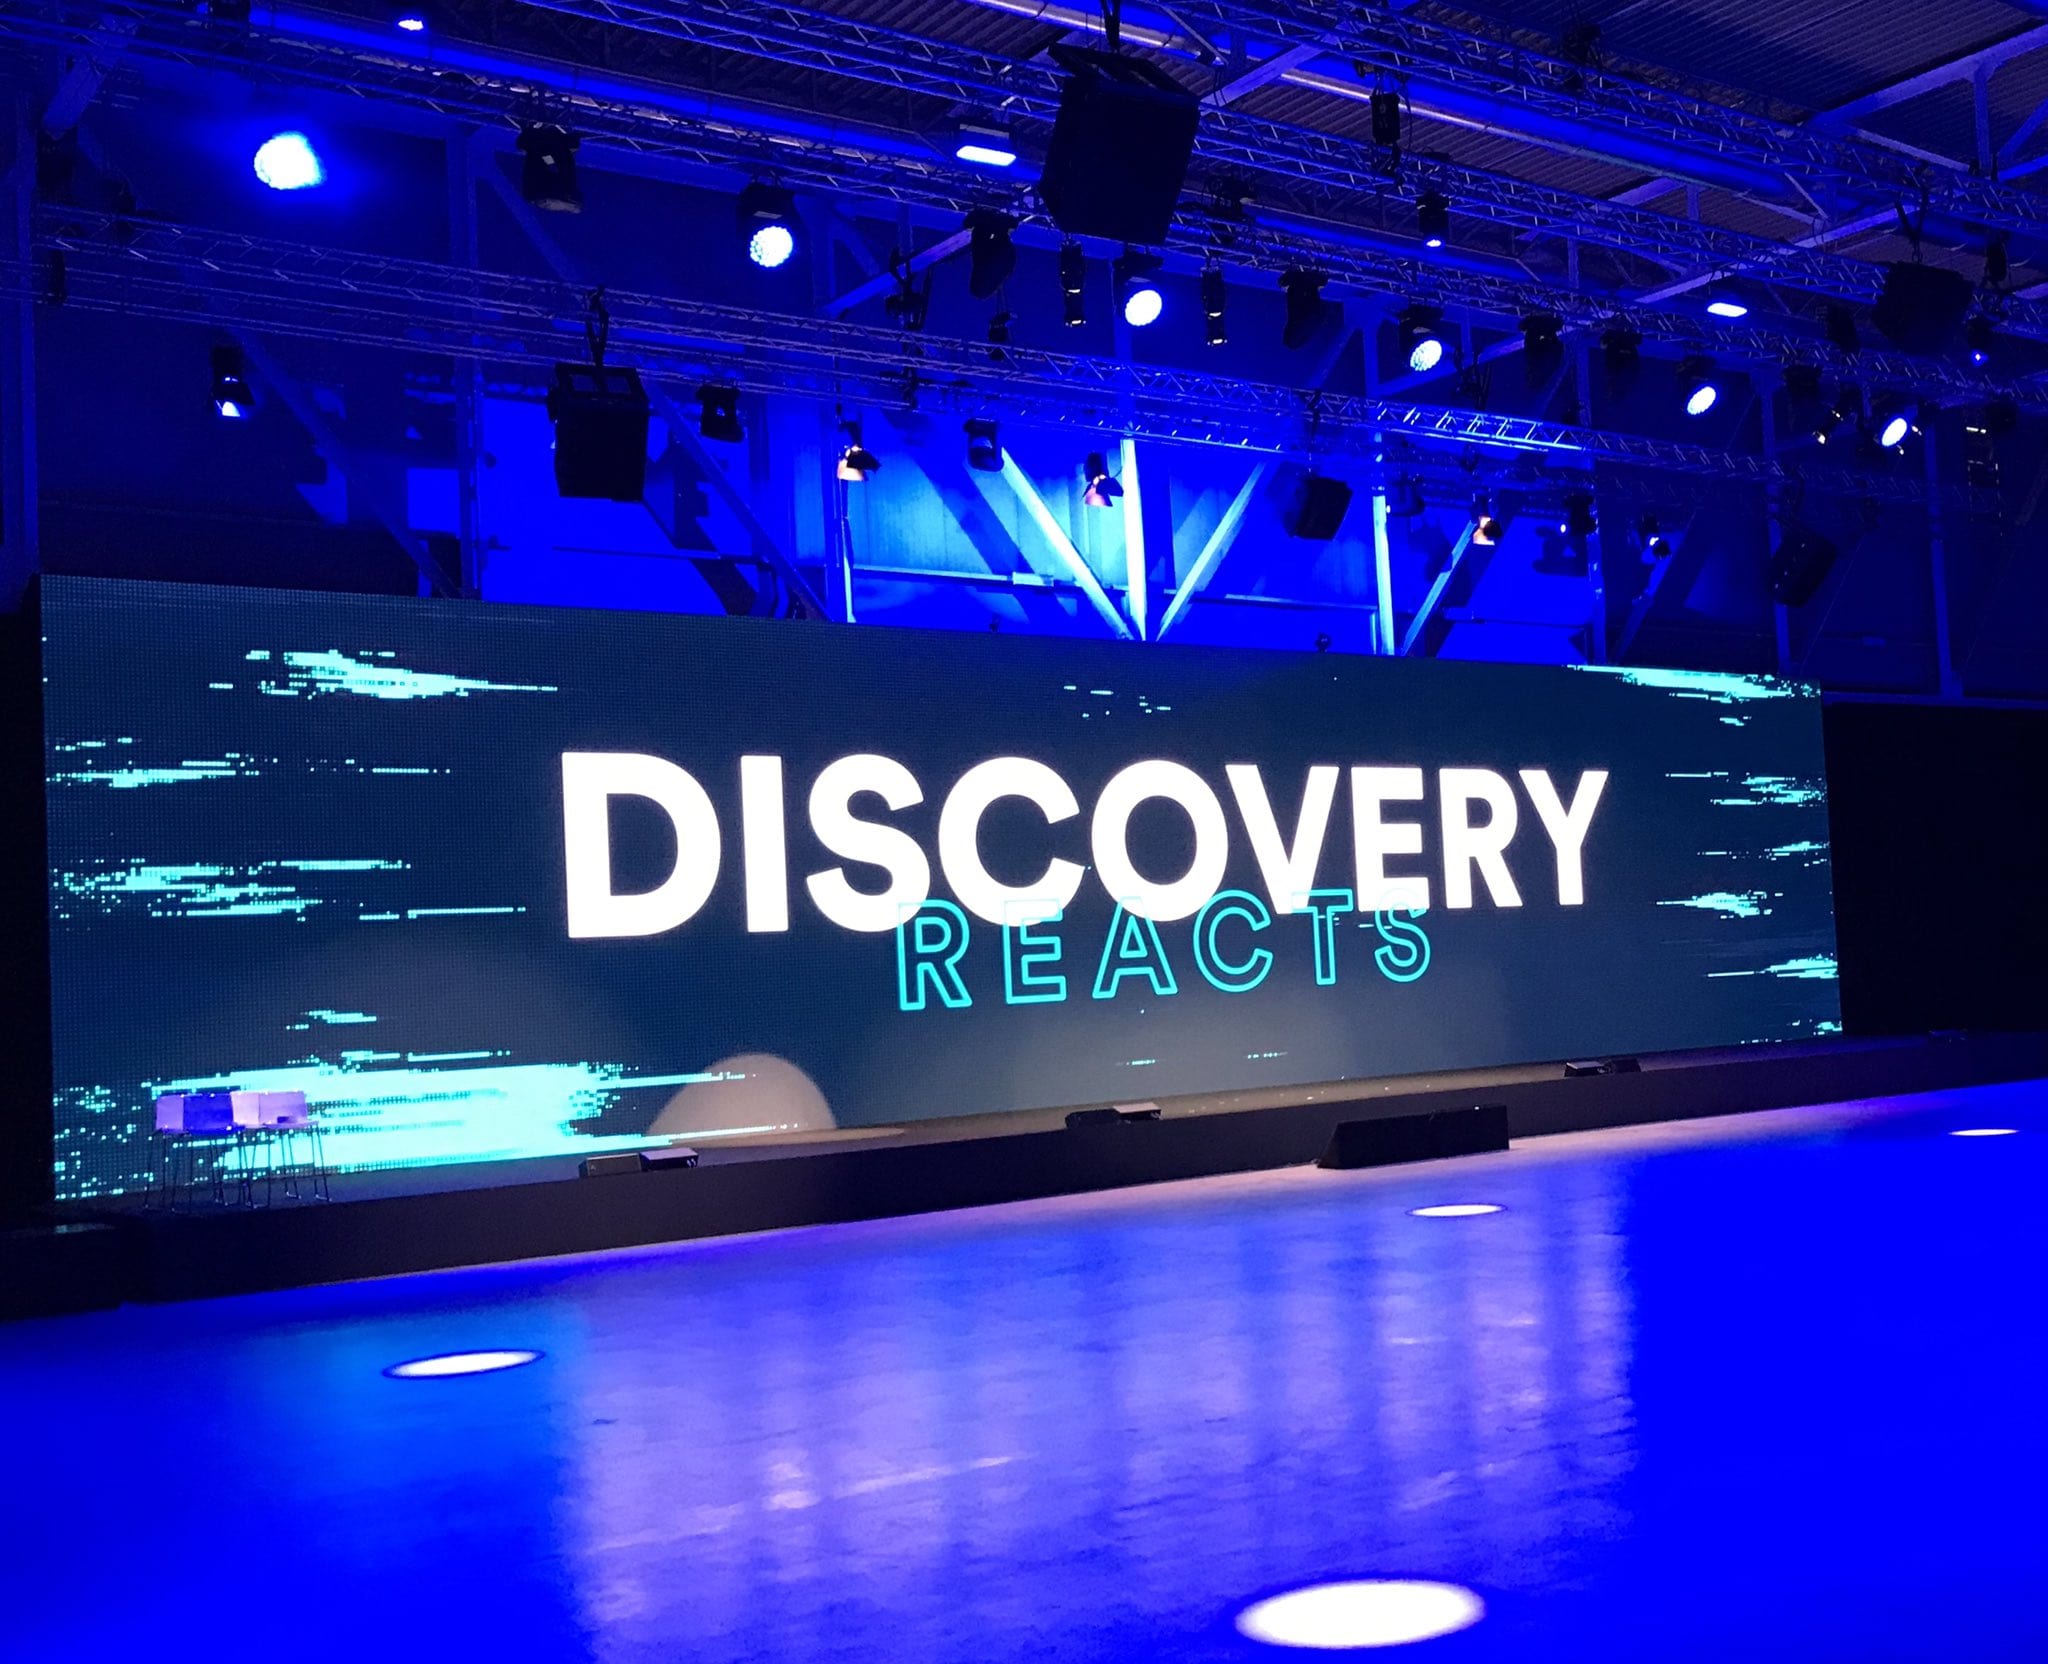 Palinsesti 2020-21 di Discovery: ecco cosa vedremo su Nove, Real Time e gli altri canali